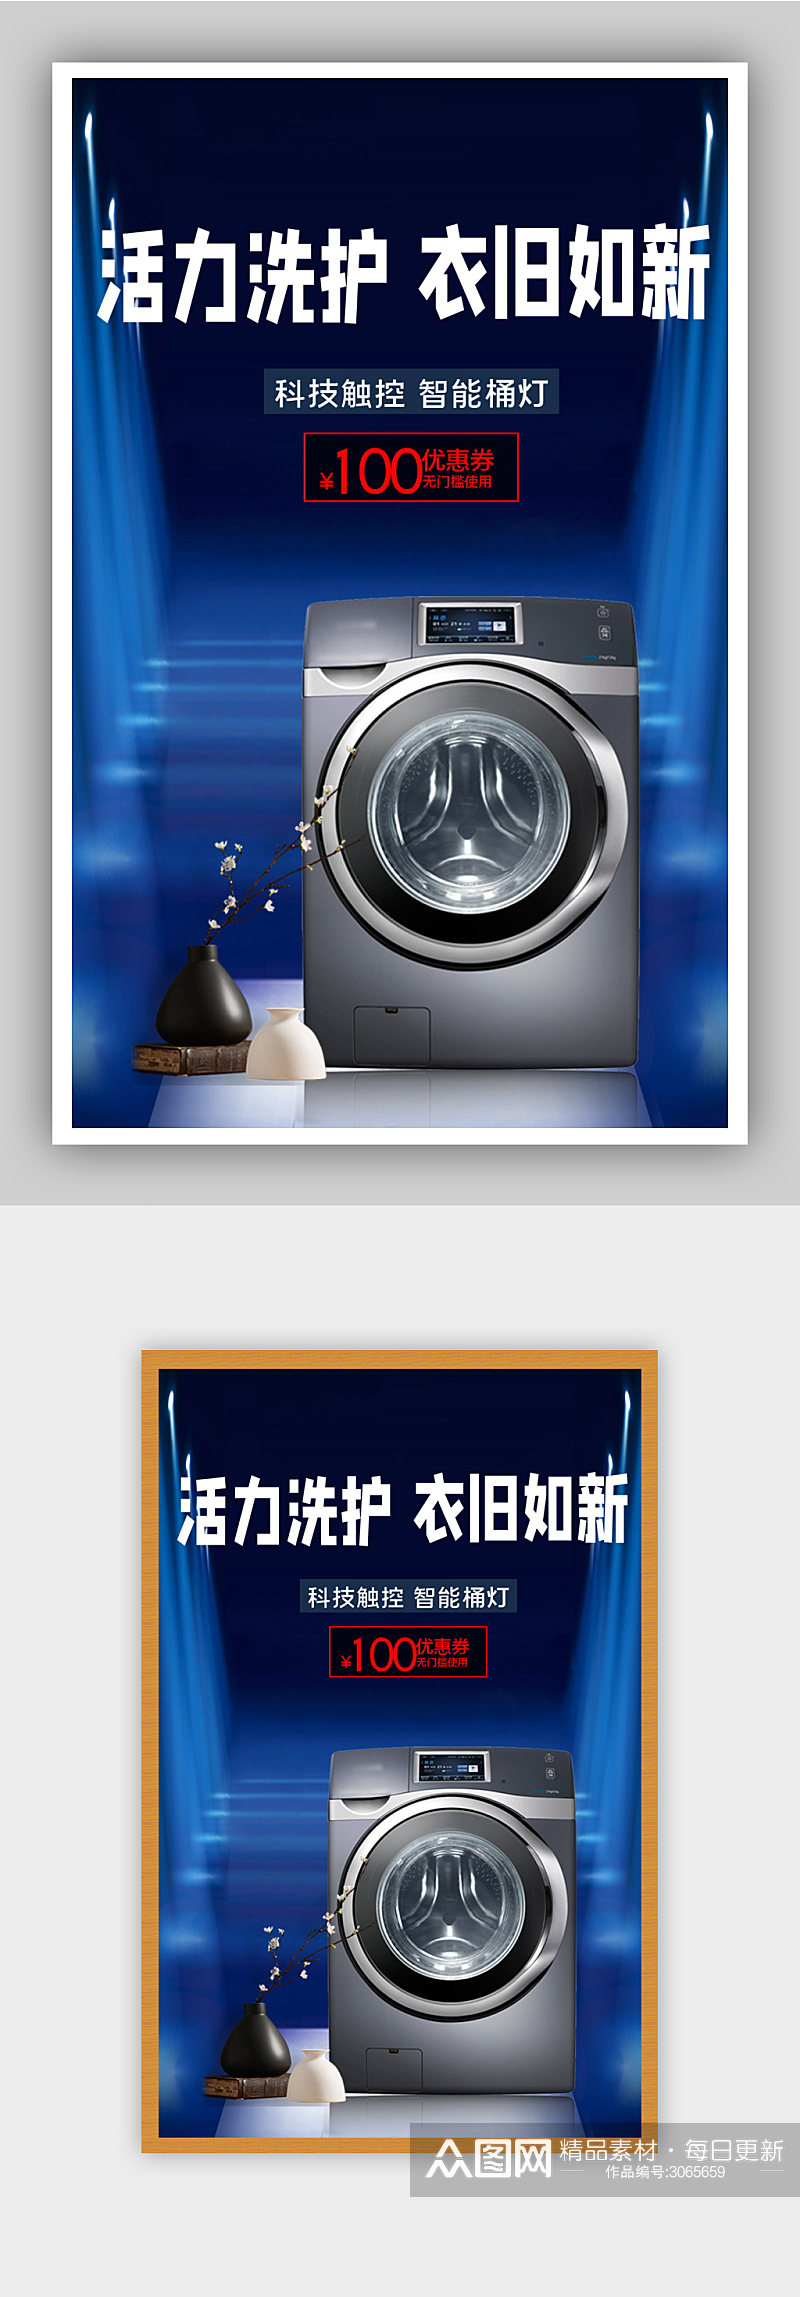 智能科技家电洗衣机电商背景海报素材